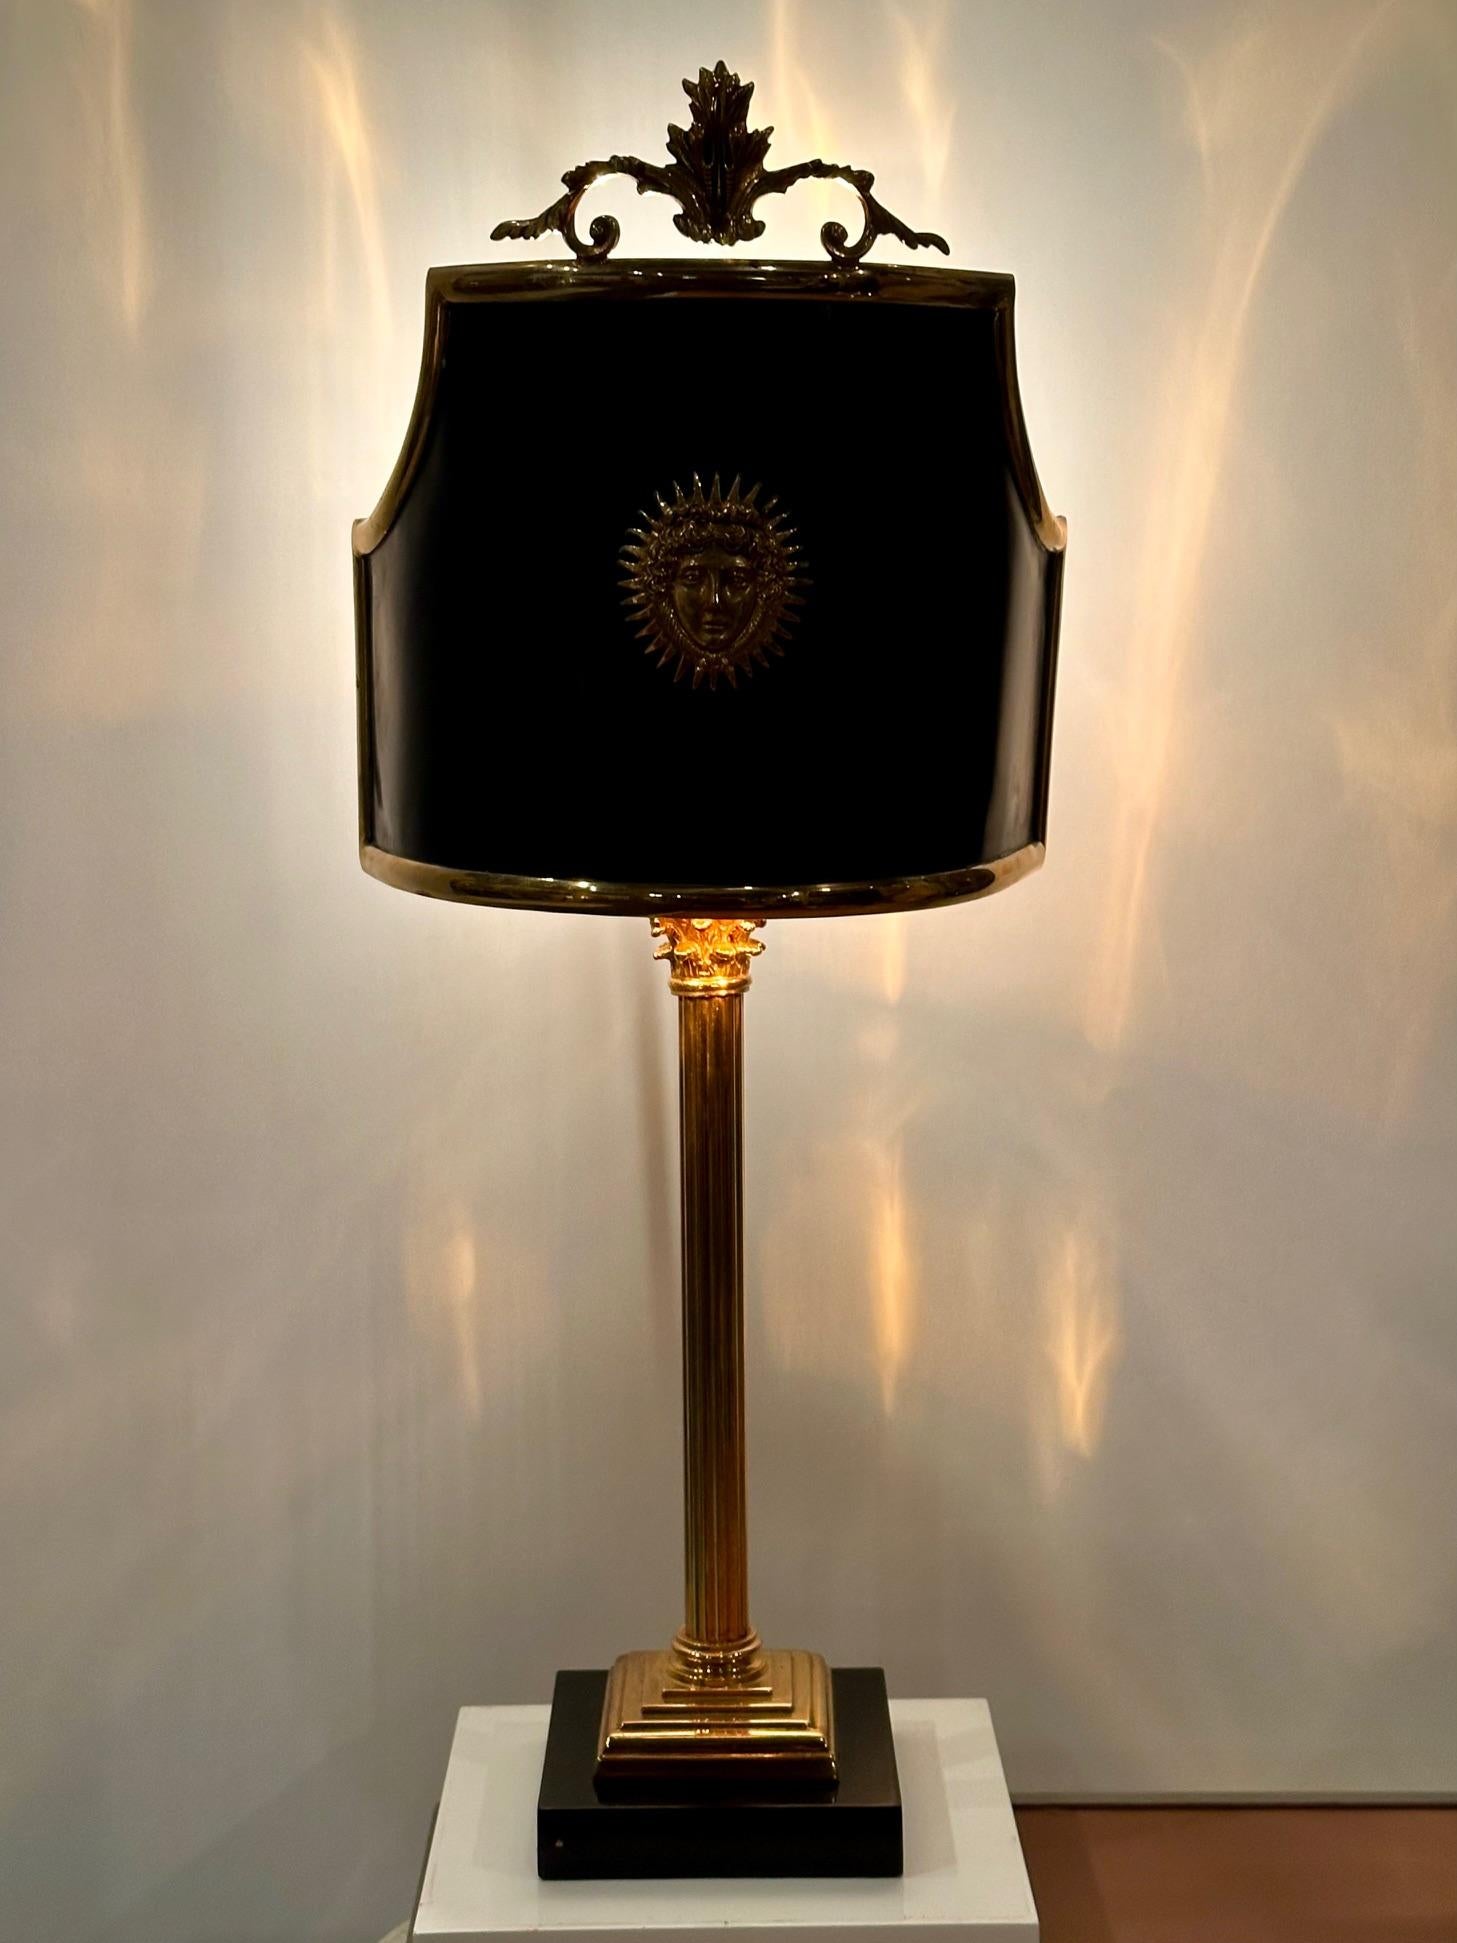 Superbe lampe de table de la Maison Jansen en bronze doré noir et or et ébonite noire, de forme colonnaire, avec un abat-jour en métal de forme fabuleuse et une décoration en forme d'étoile sur le devant.  L'élégance est au rendez-vous.